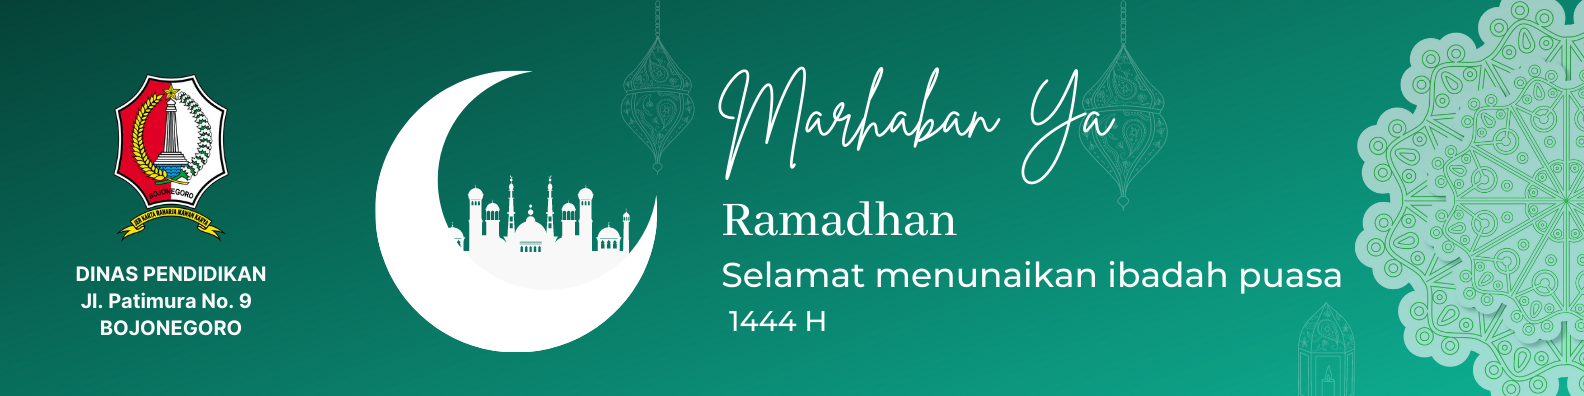 Marhaban<BR>Ya Ramadhan